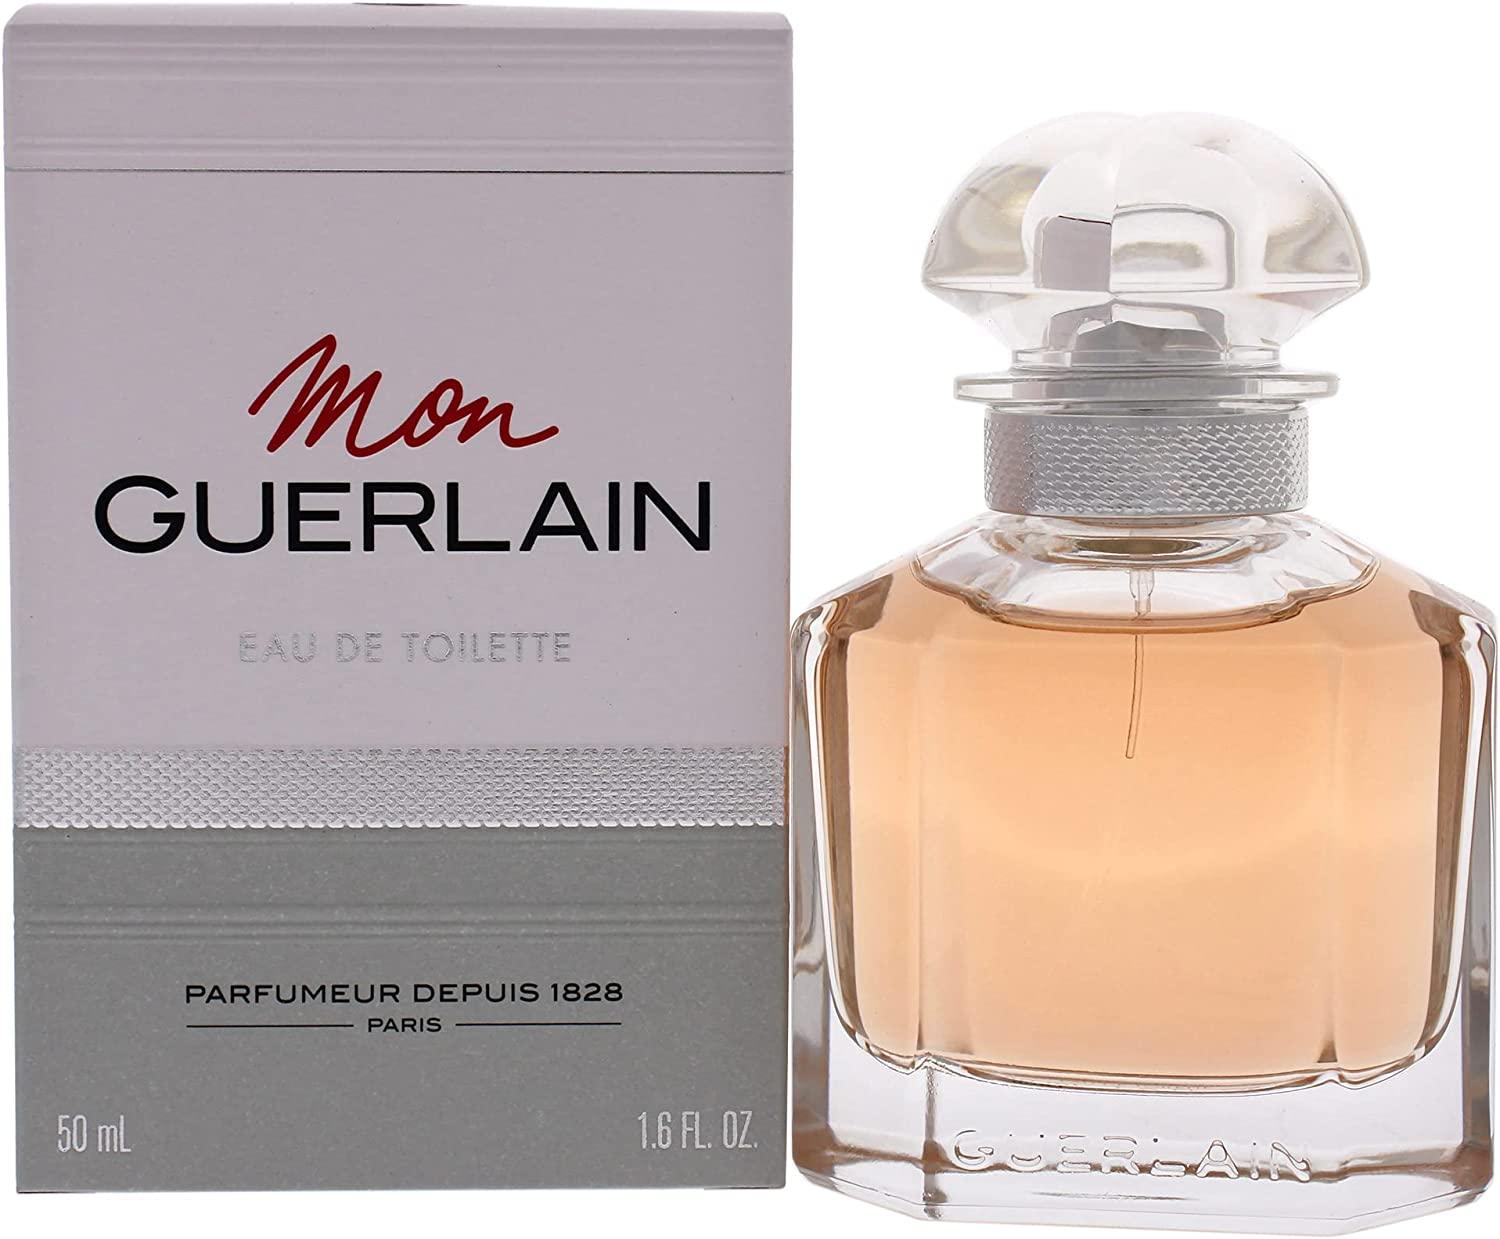 Guerlain Mon Eau de Toilette for Women - Parfum Gallerie